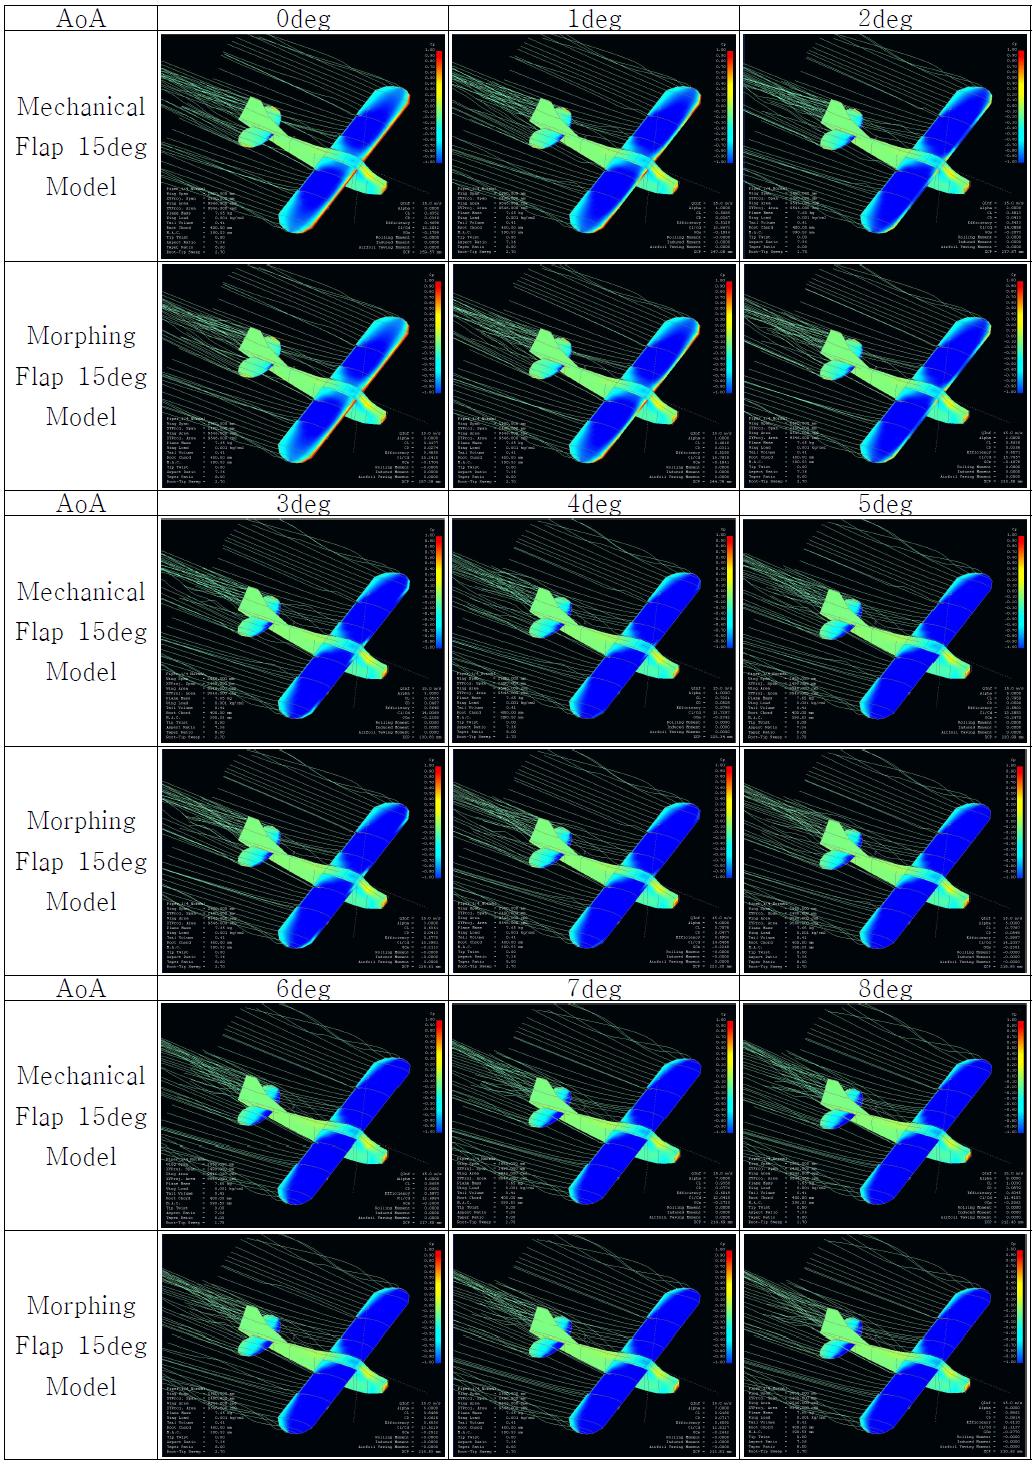 Full Model Simulation (Cp) : Mechanical Flap 15deg vs. Morphing Flap 15deg